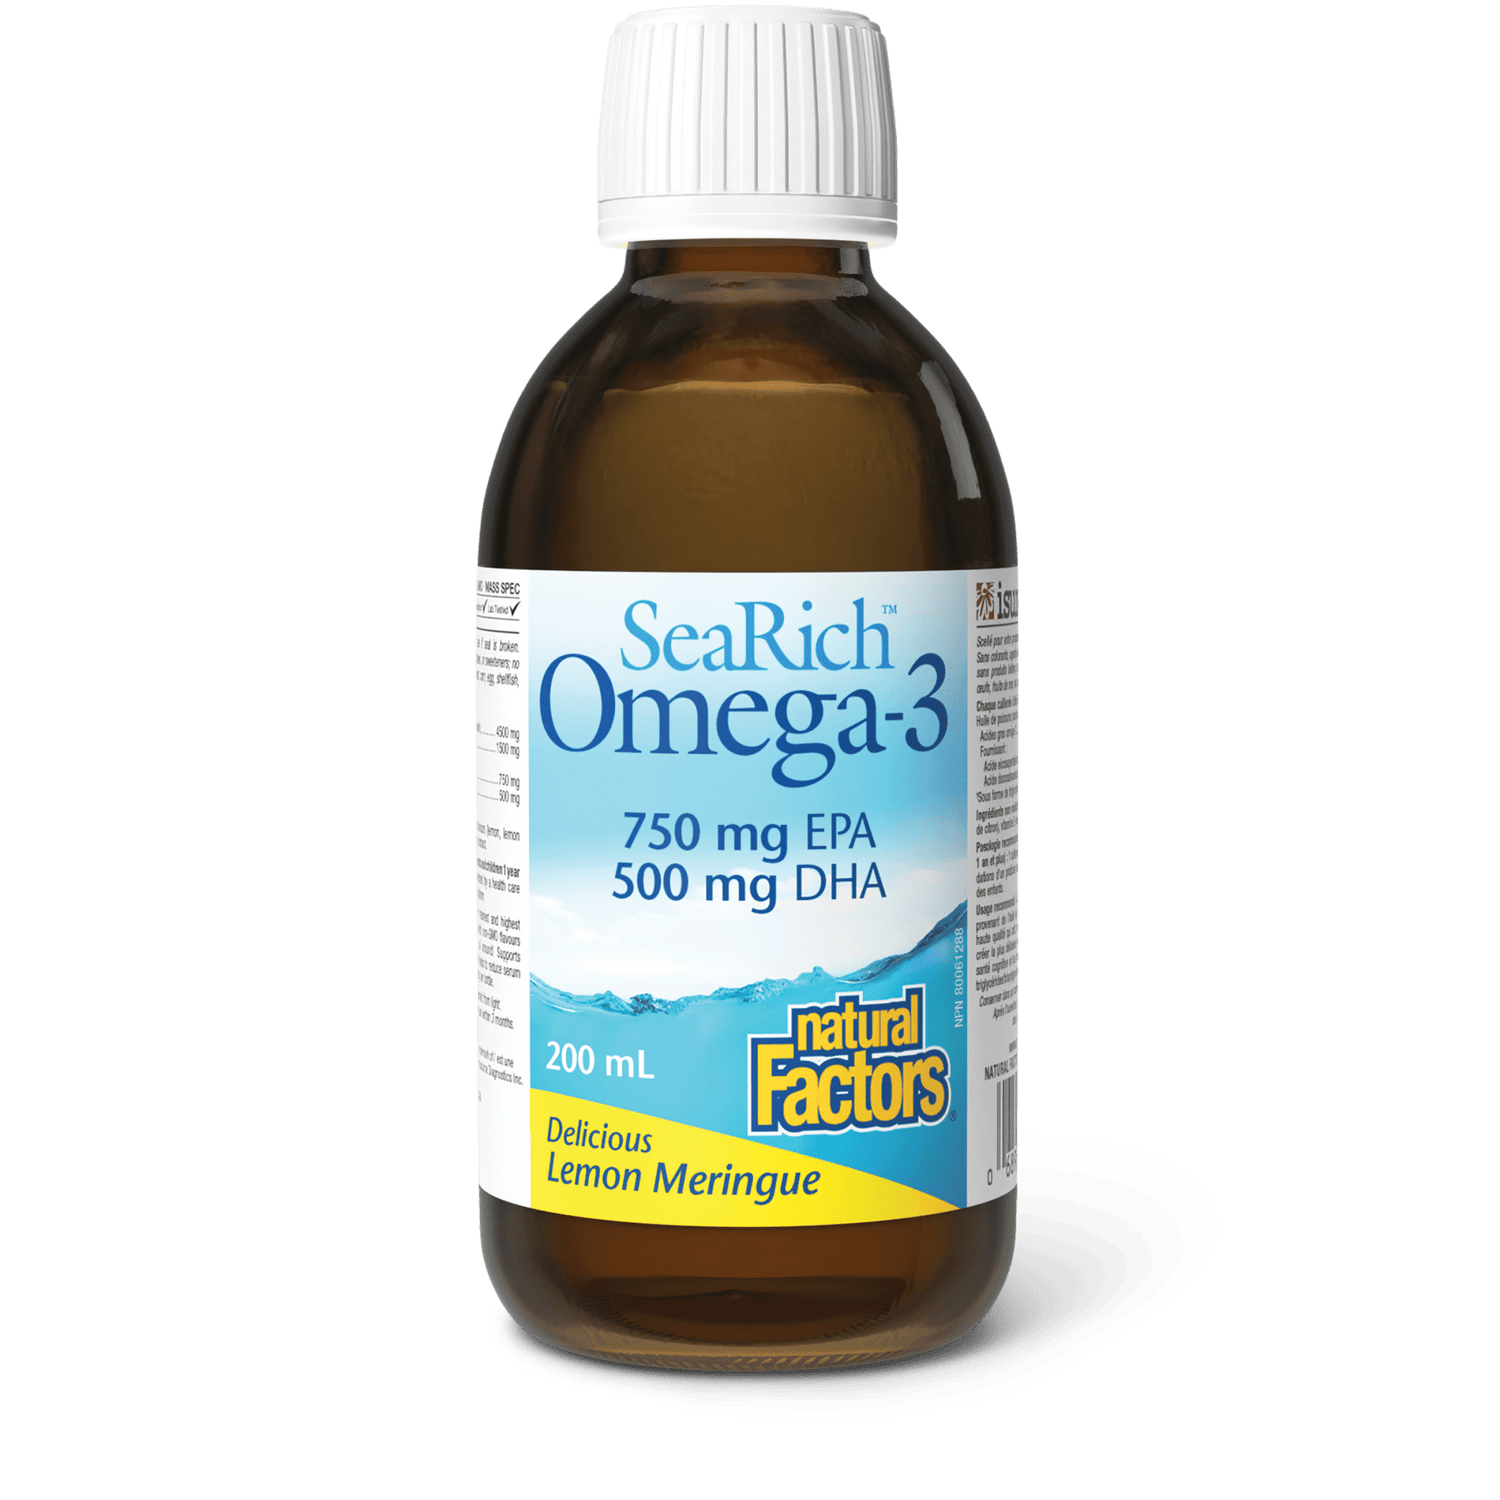 Omega-3 750 mg EPA/500 mg DHA, Lemon Meringue, SeaRich, Natural Factors|v|image|35740